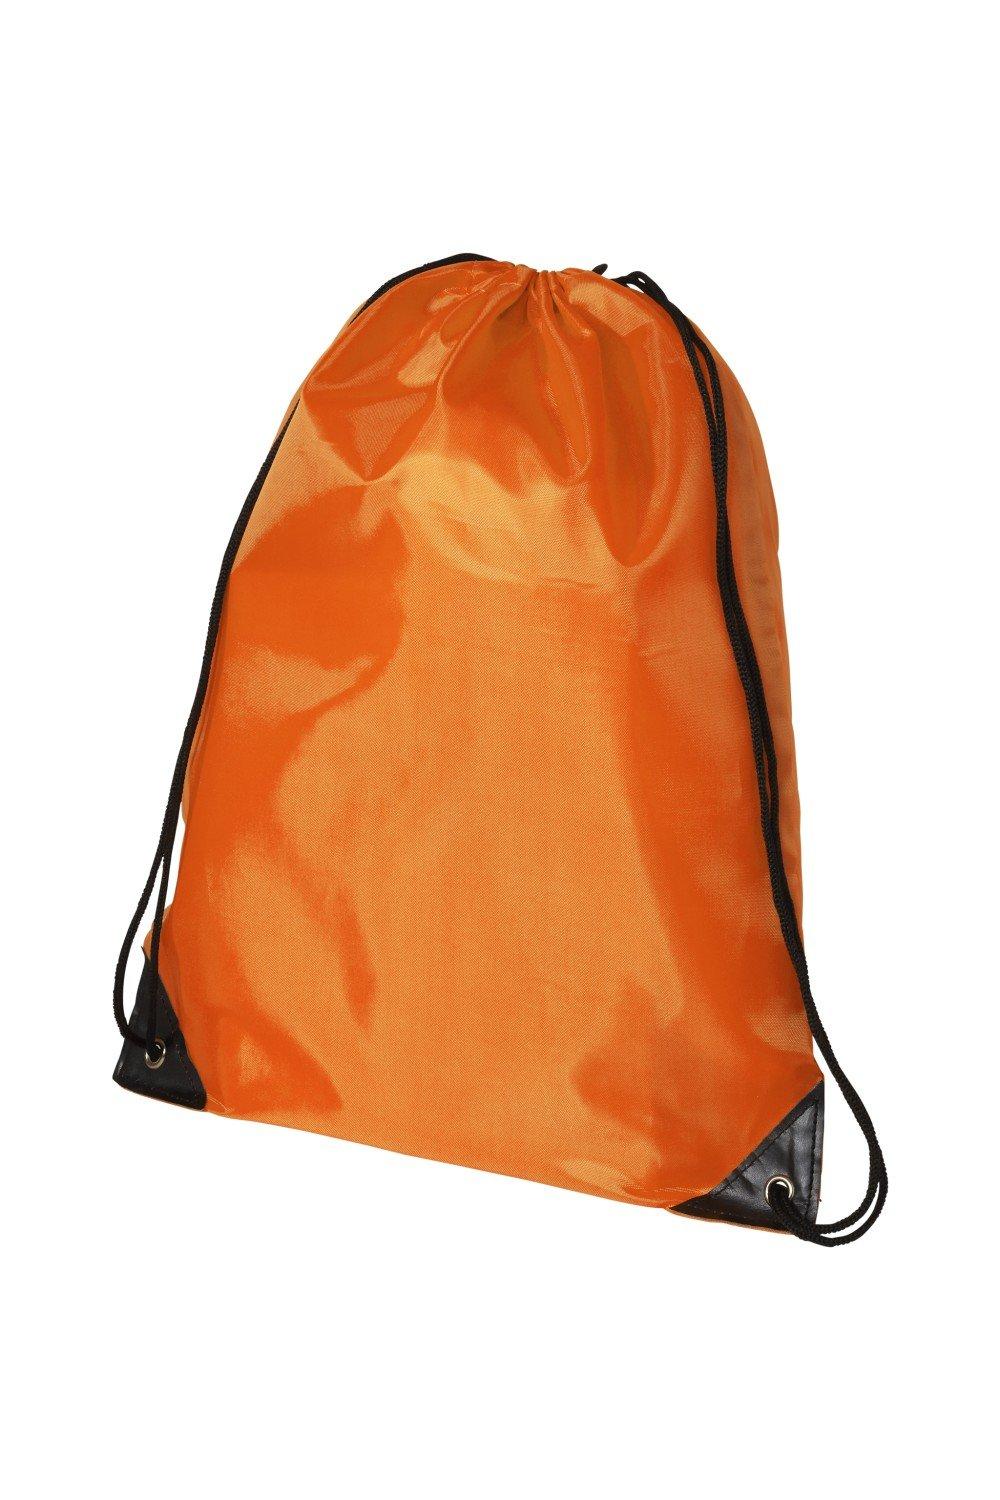 Рюкзак Oriole Премиум Bullet, оранжевый